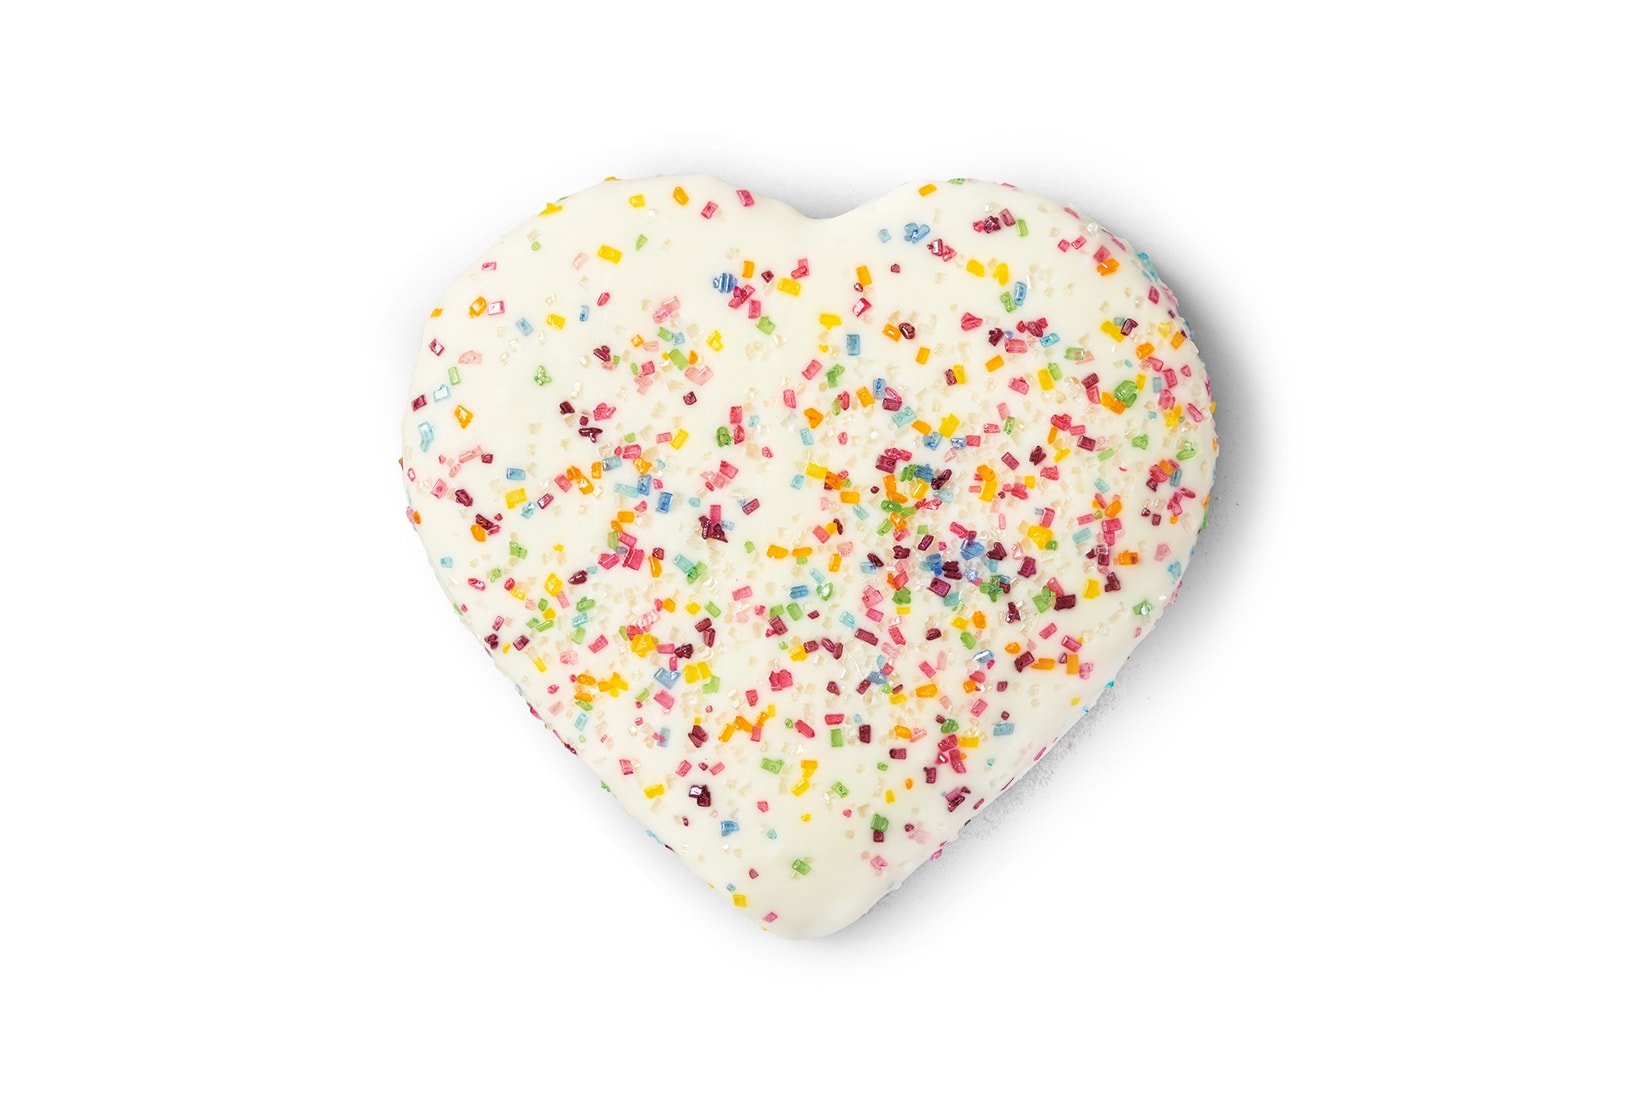 Starbucks Valentine's Day Sugar Cookie White